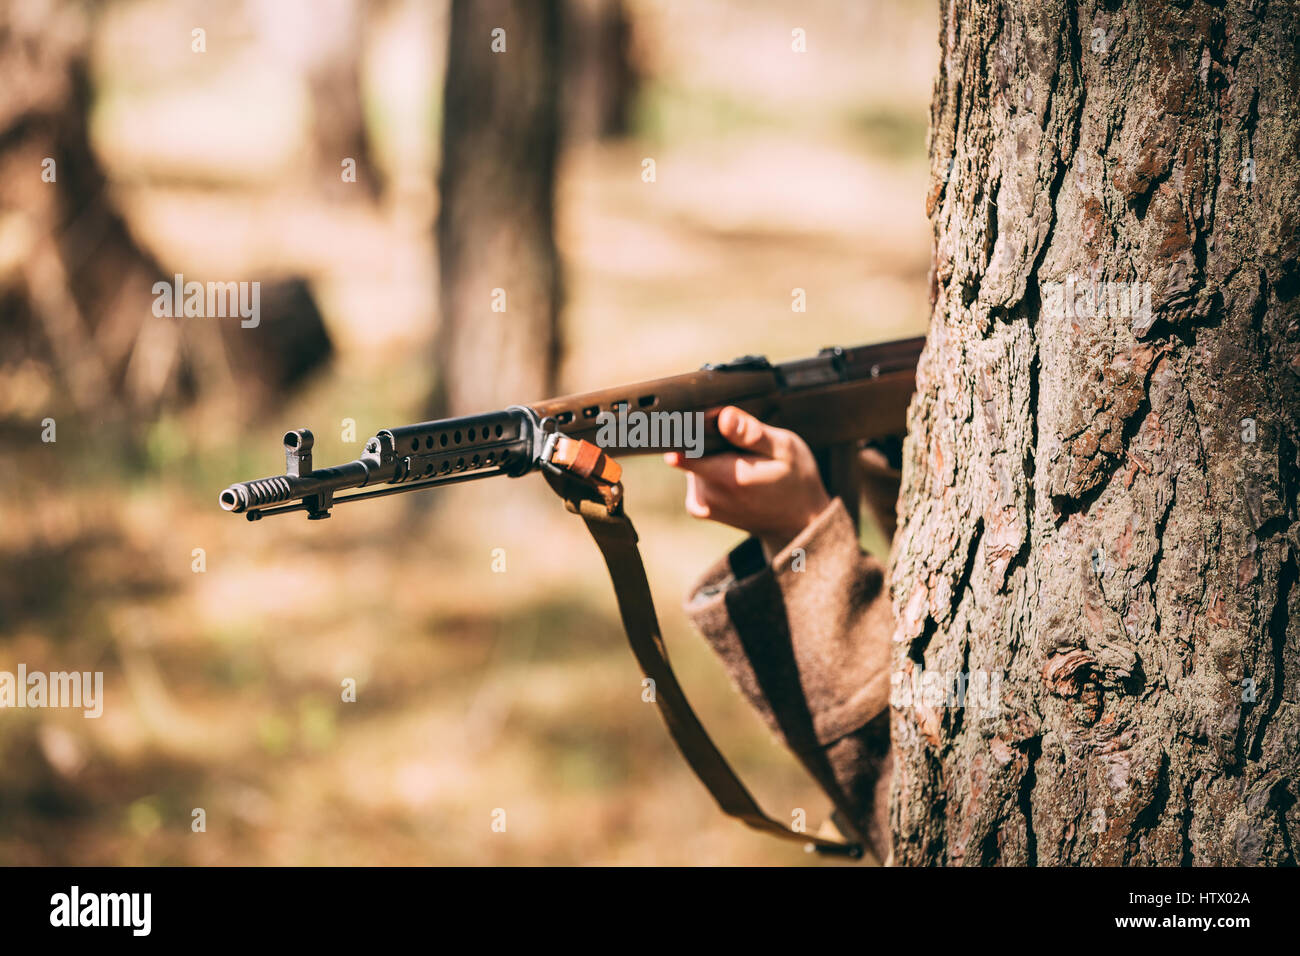 Ri-enactor vestito come Soviet russo Soldato di fanteria della II Guerra Mondiale nascosto con un fucile arma in un agguato nei pressi di albero nella foresta. Chiudere fino a Ri sovietica Foto Stock